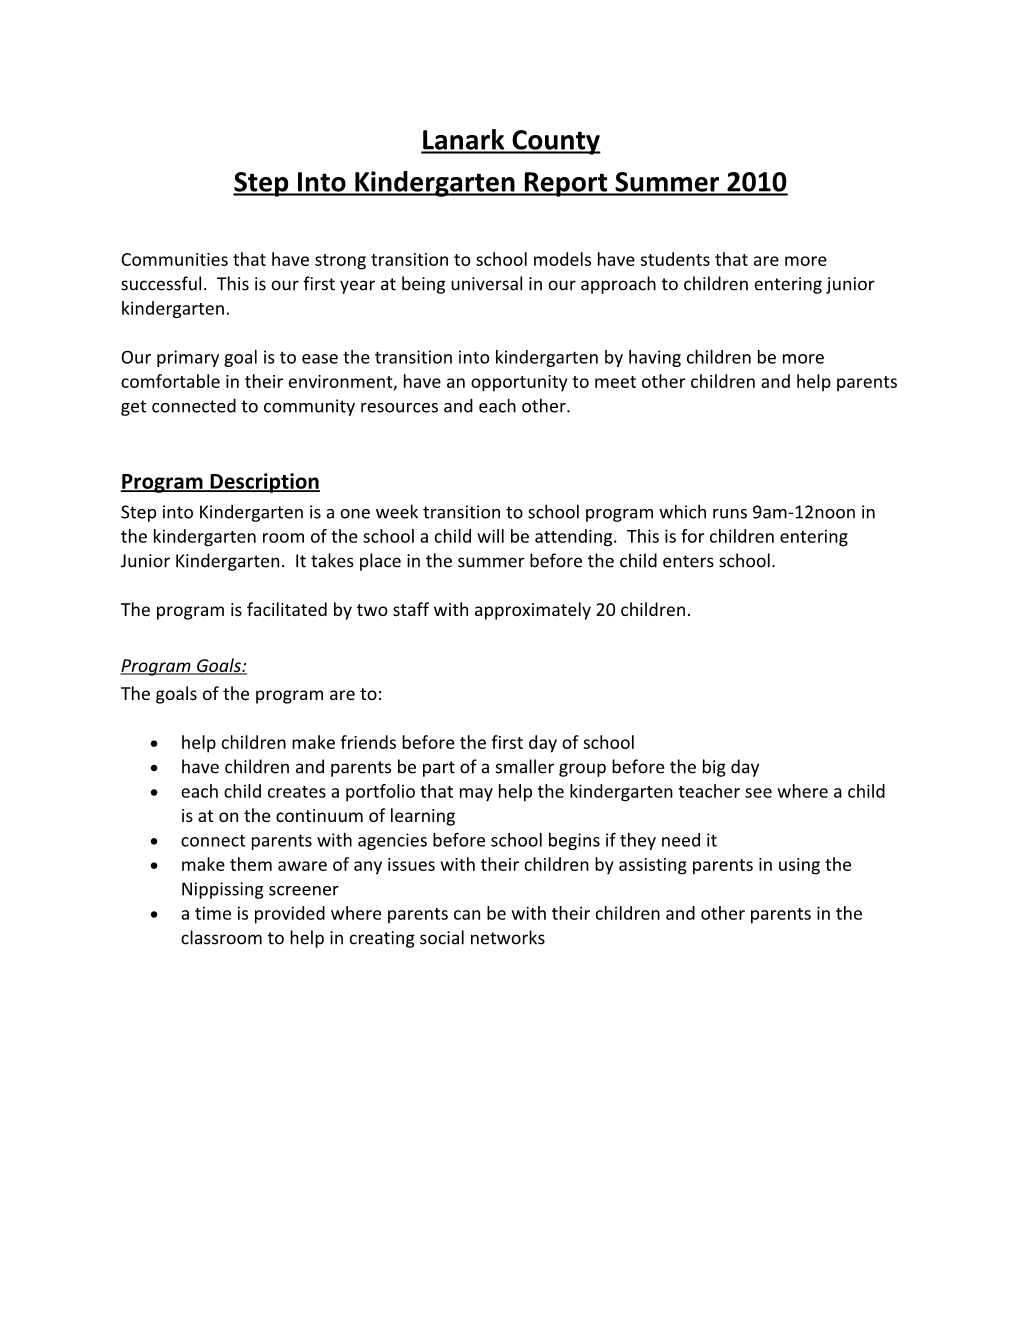 Step Into Kindergarten Report Summer 2010